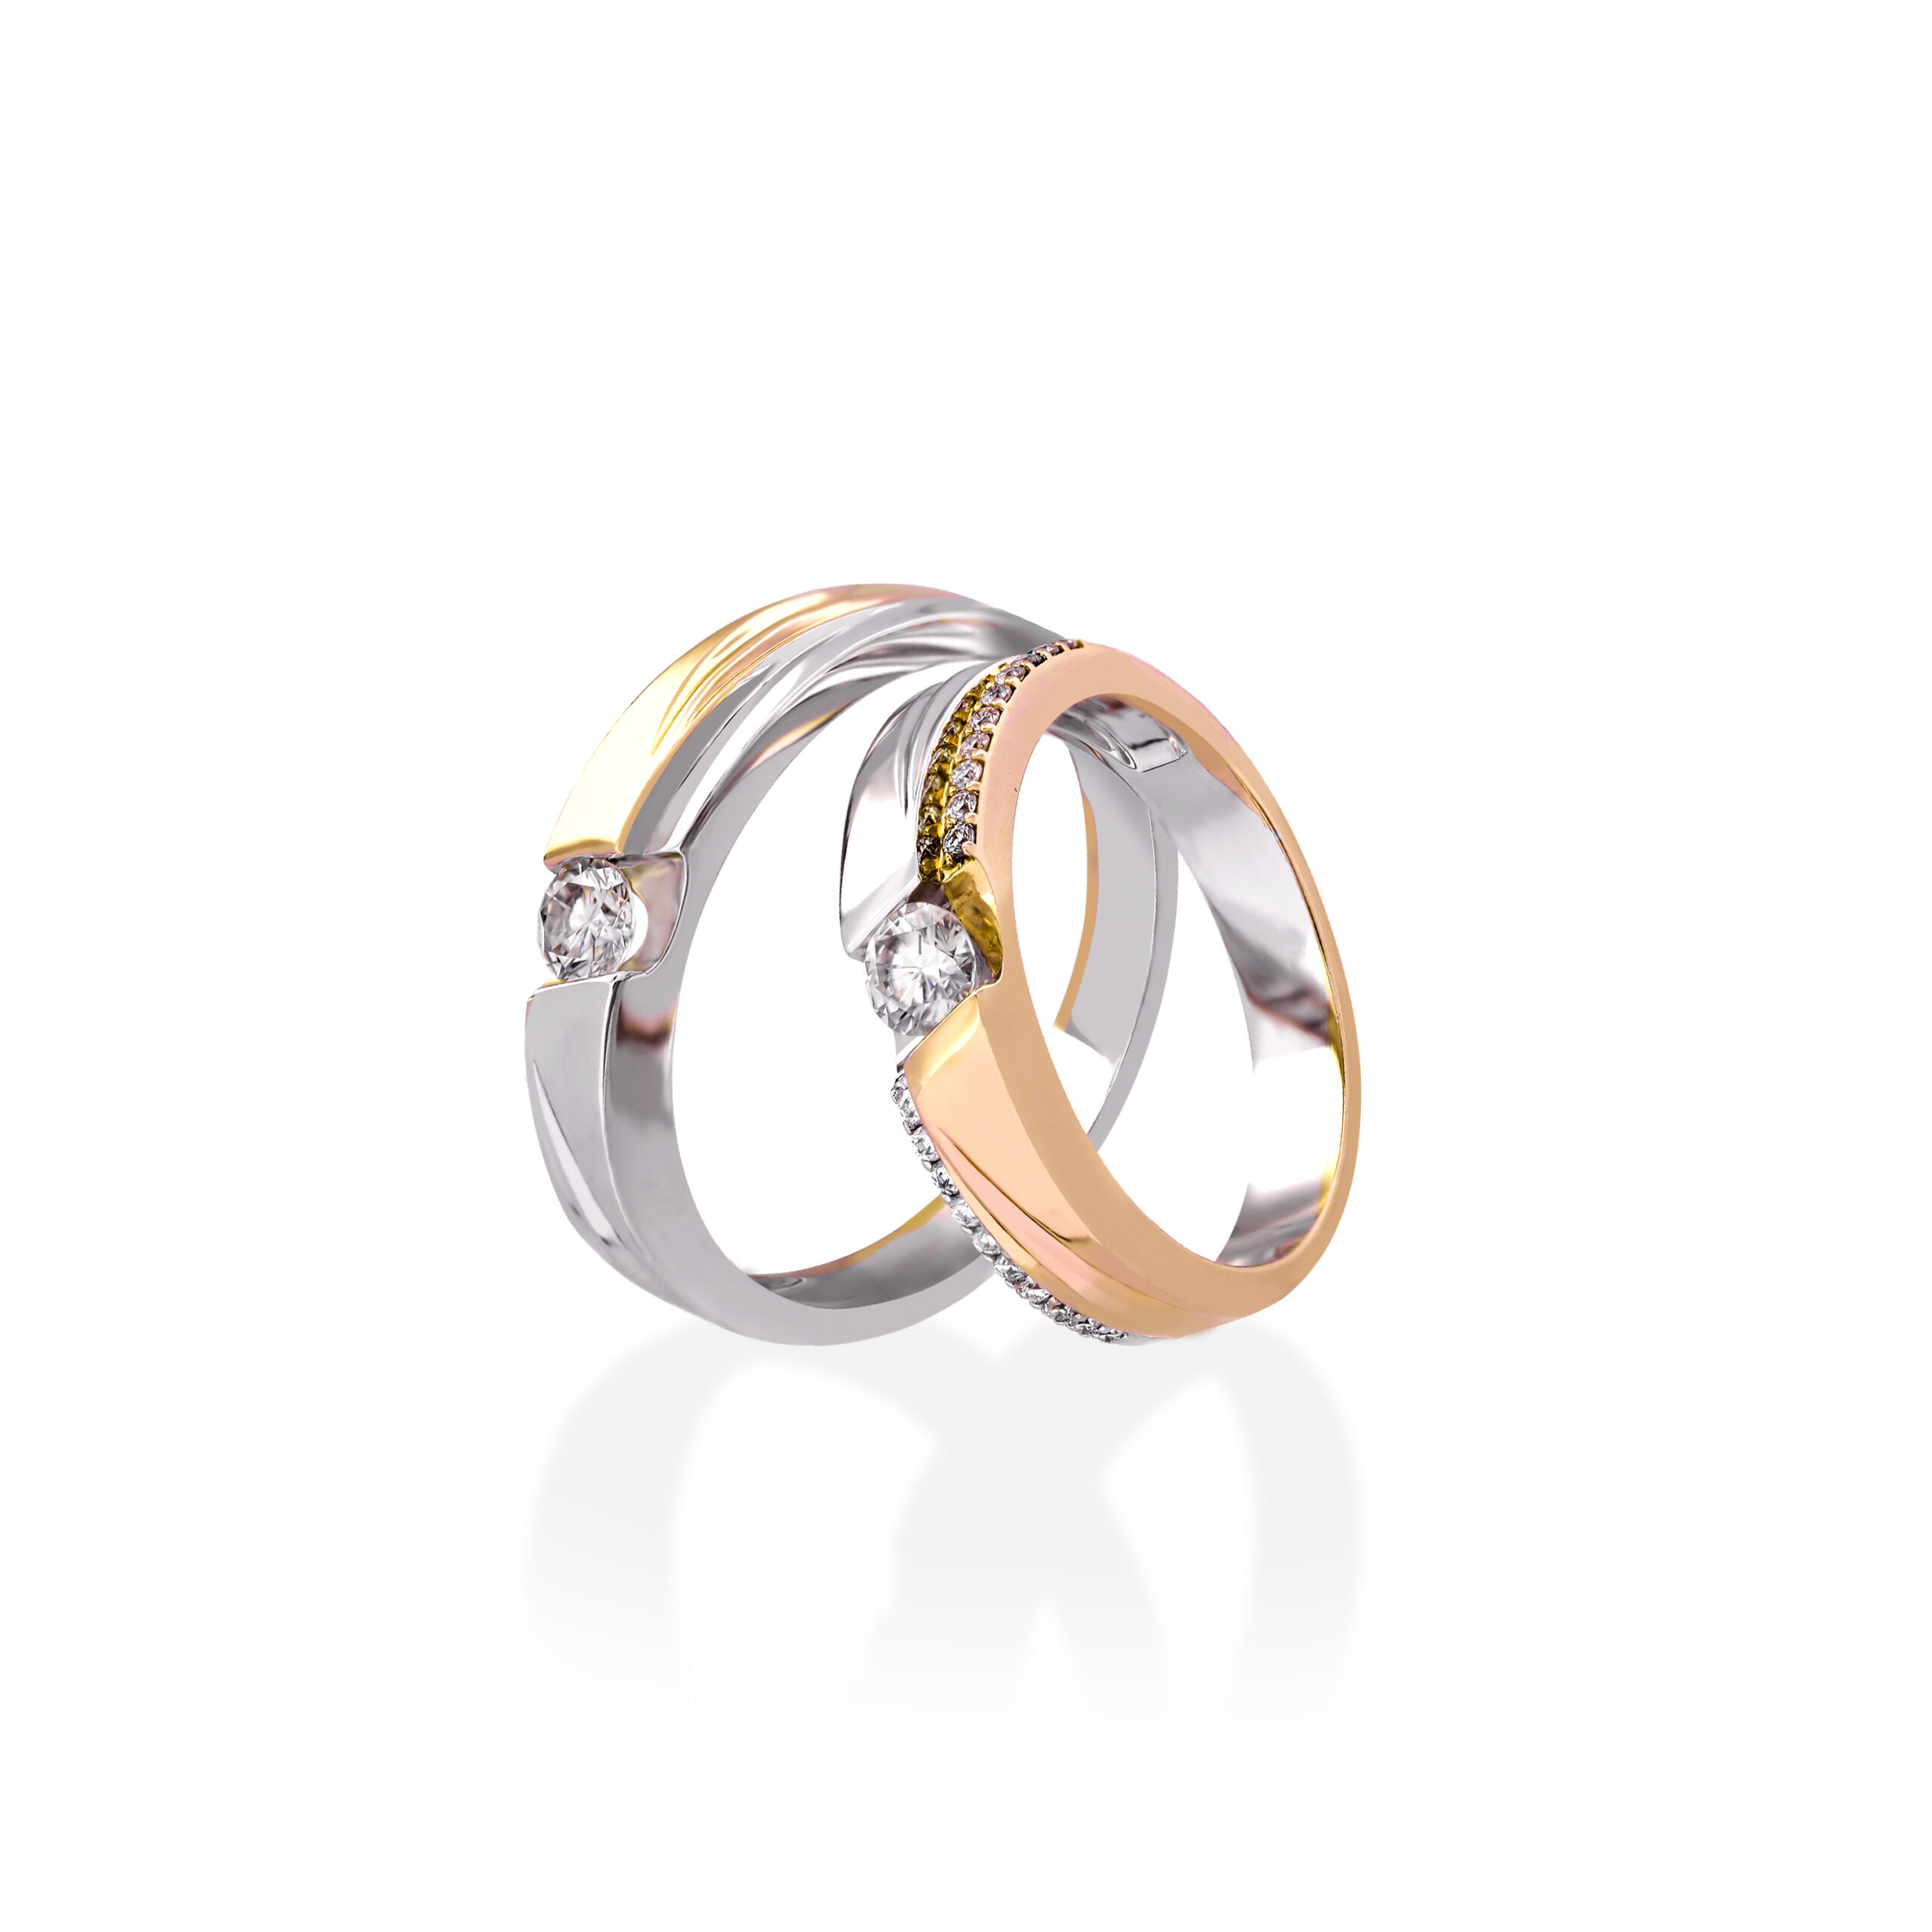 Cặp nhẫn cưới vàng 18k pnj sánh duyên 00377-00376 | pnj.com.vn